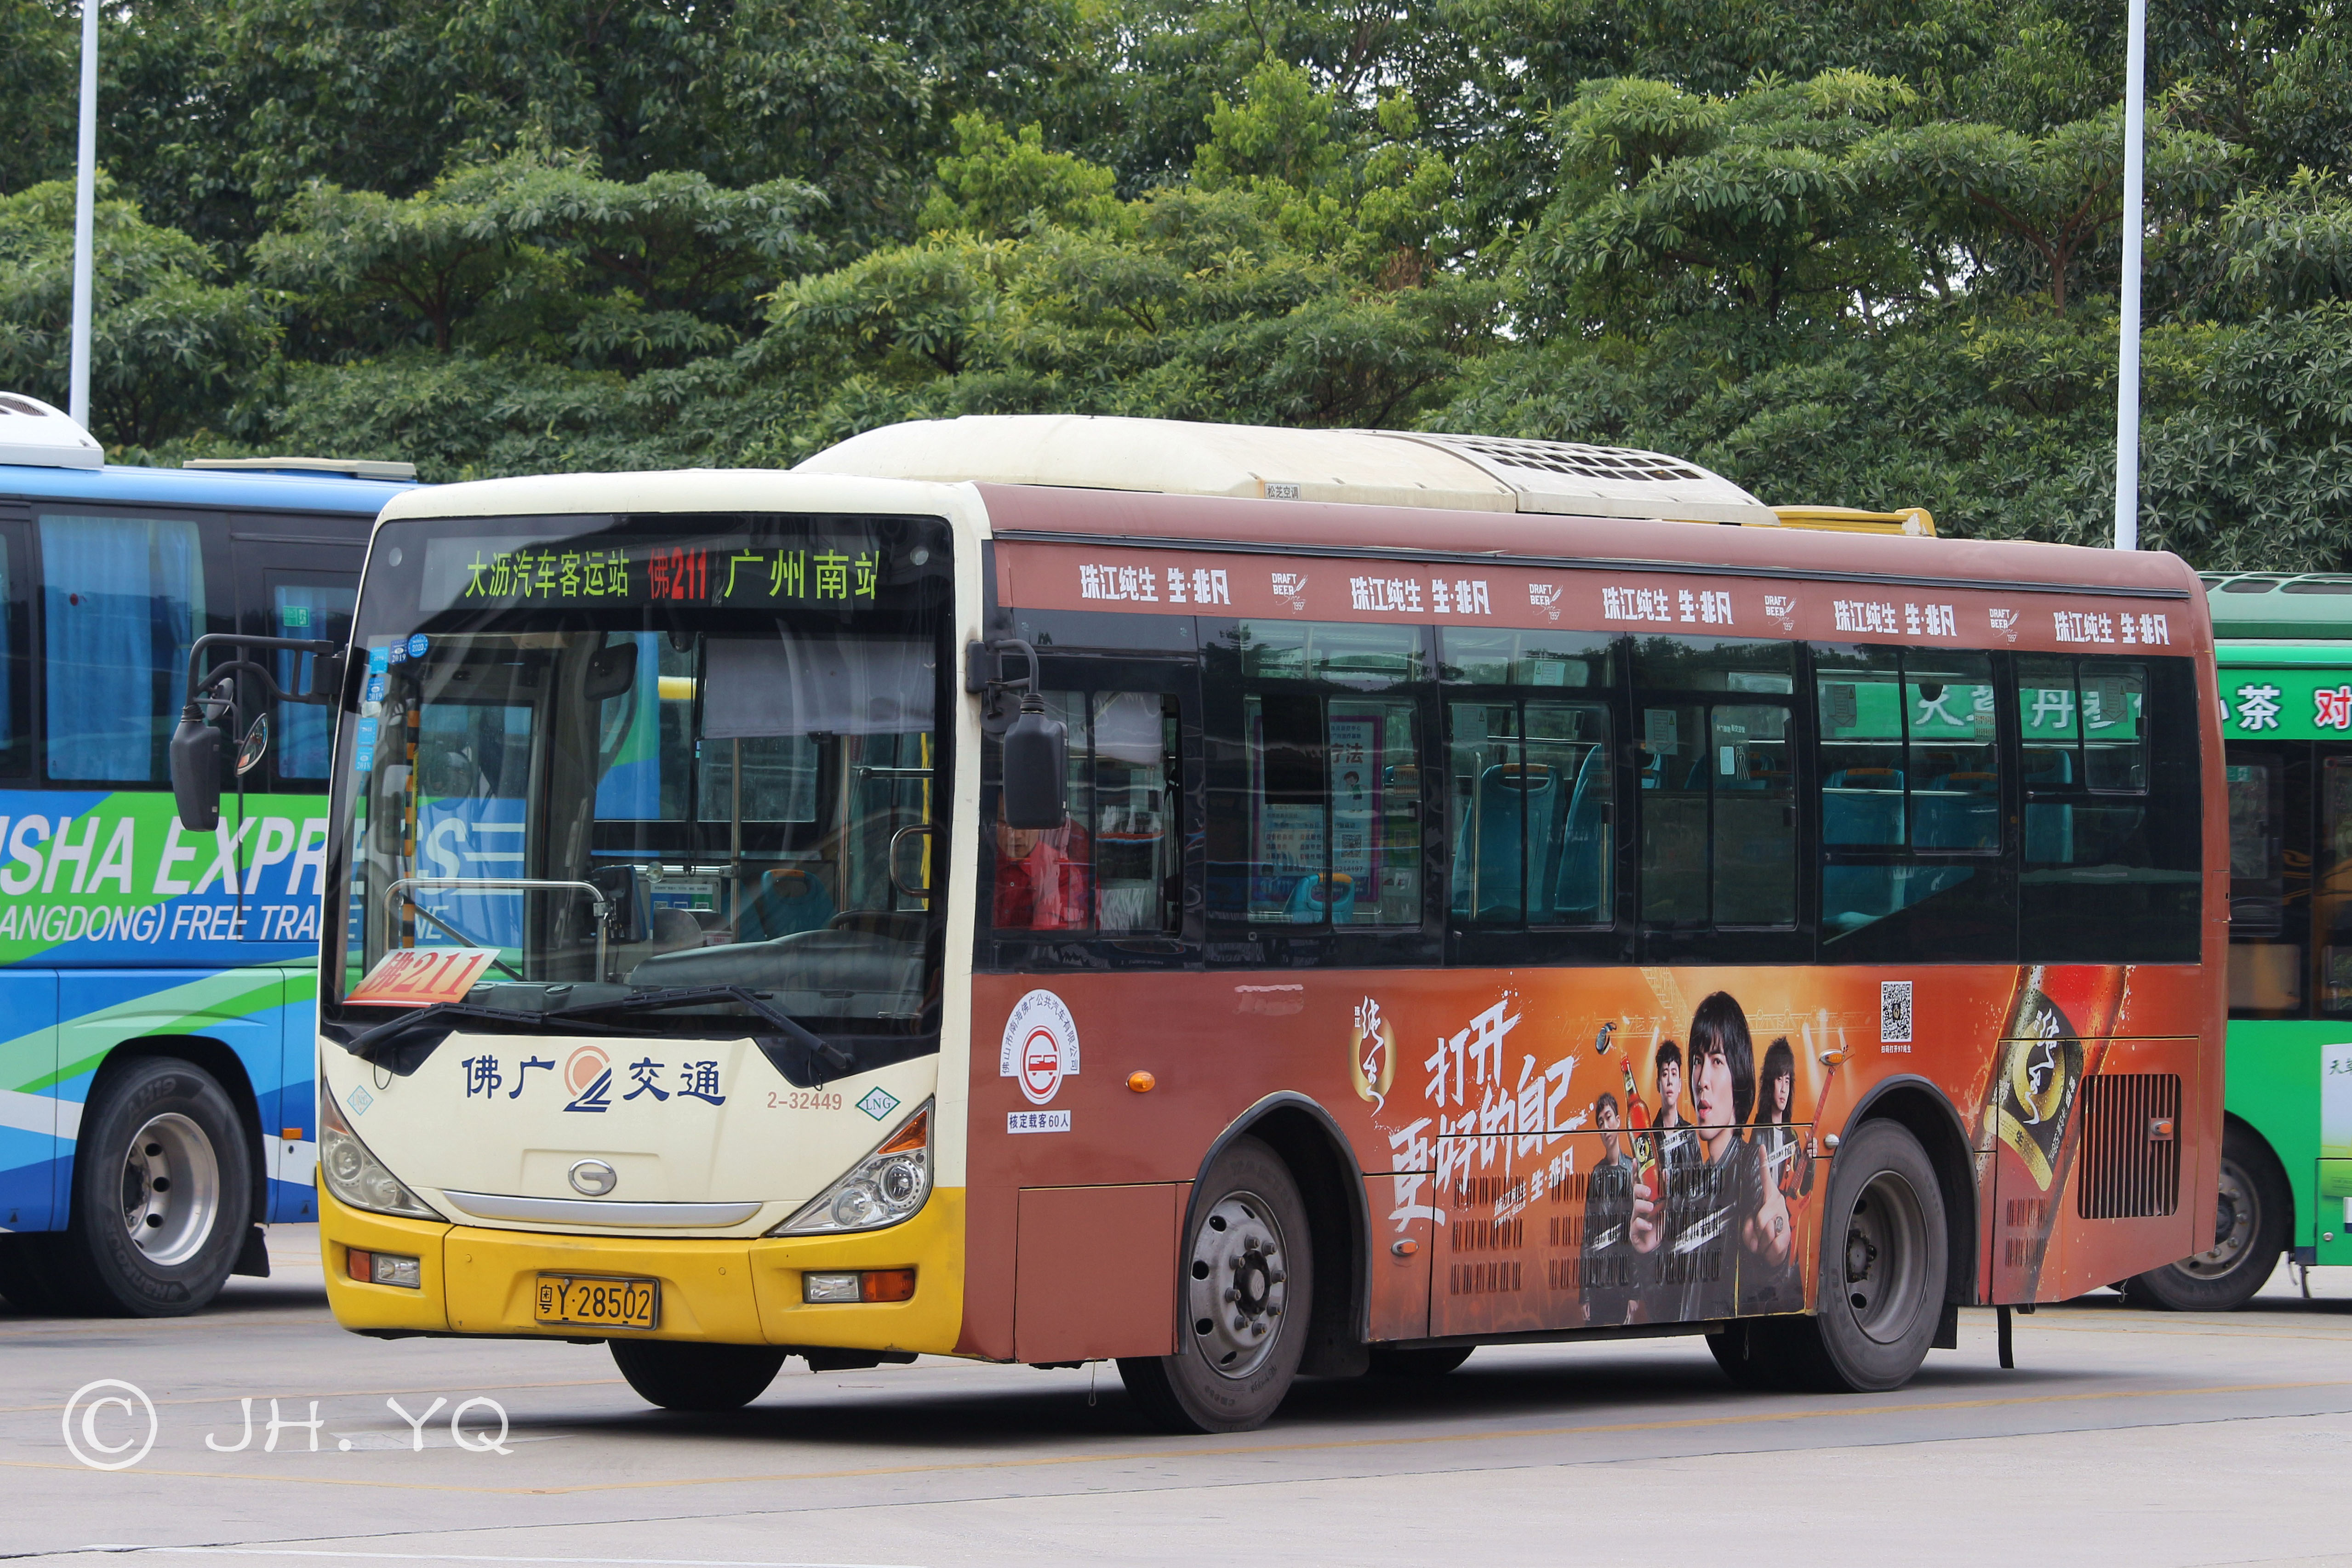 154辆恒通天然气客车将服务兰州公交 第一商用车网 cvworld.cn